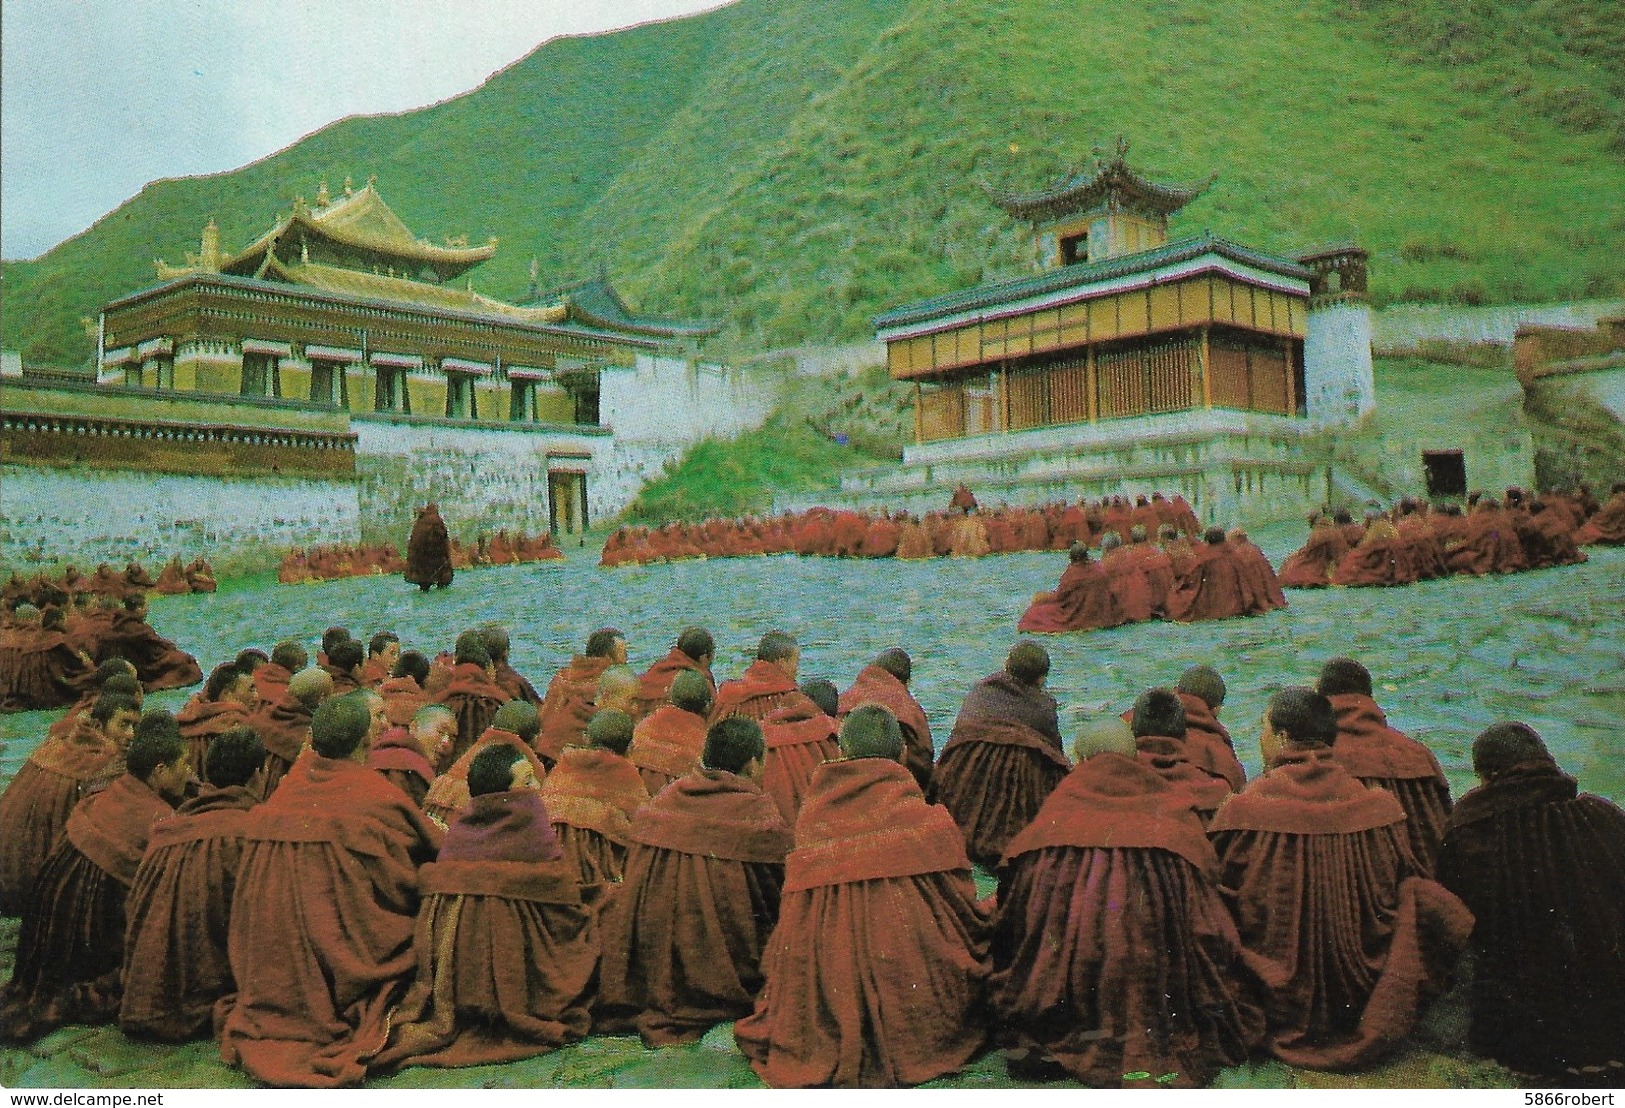 CARTE POSTALE ORIGINALE 10CM/15CM  : BUDDHIST ACTIVITIES ANIMEE TIBET - Tibet